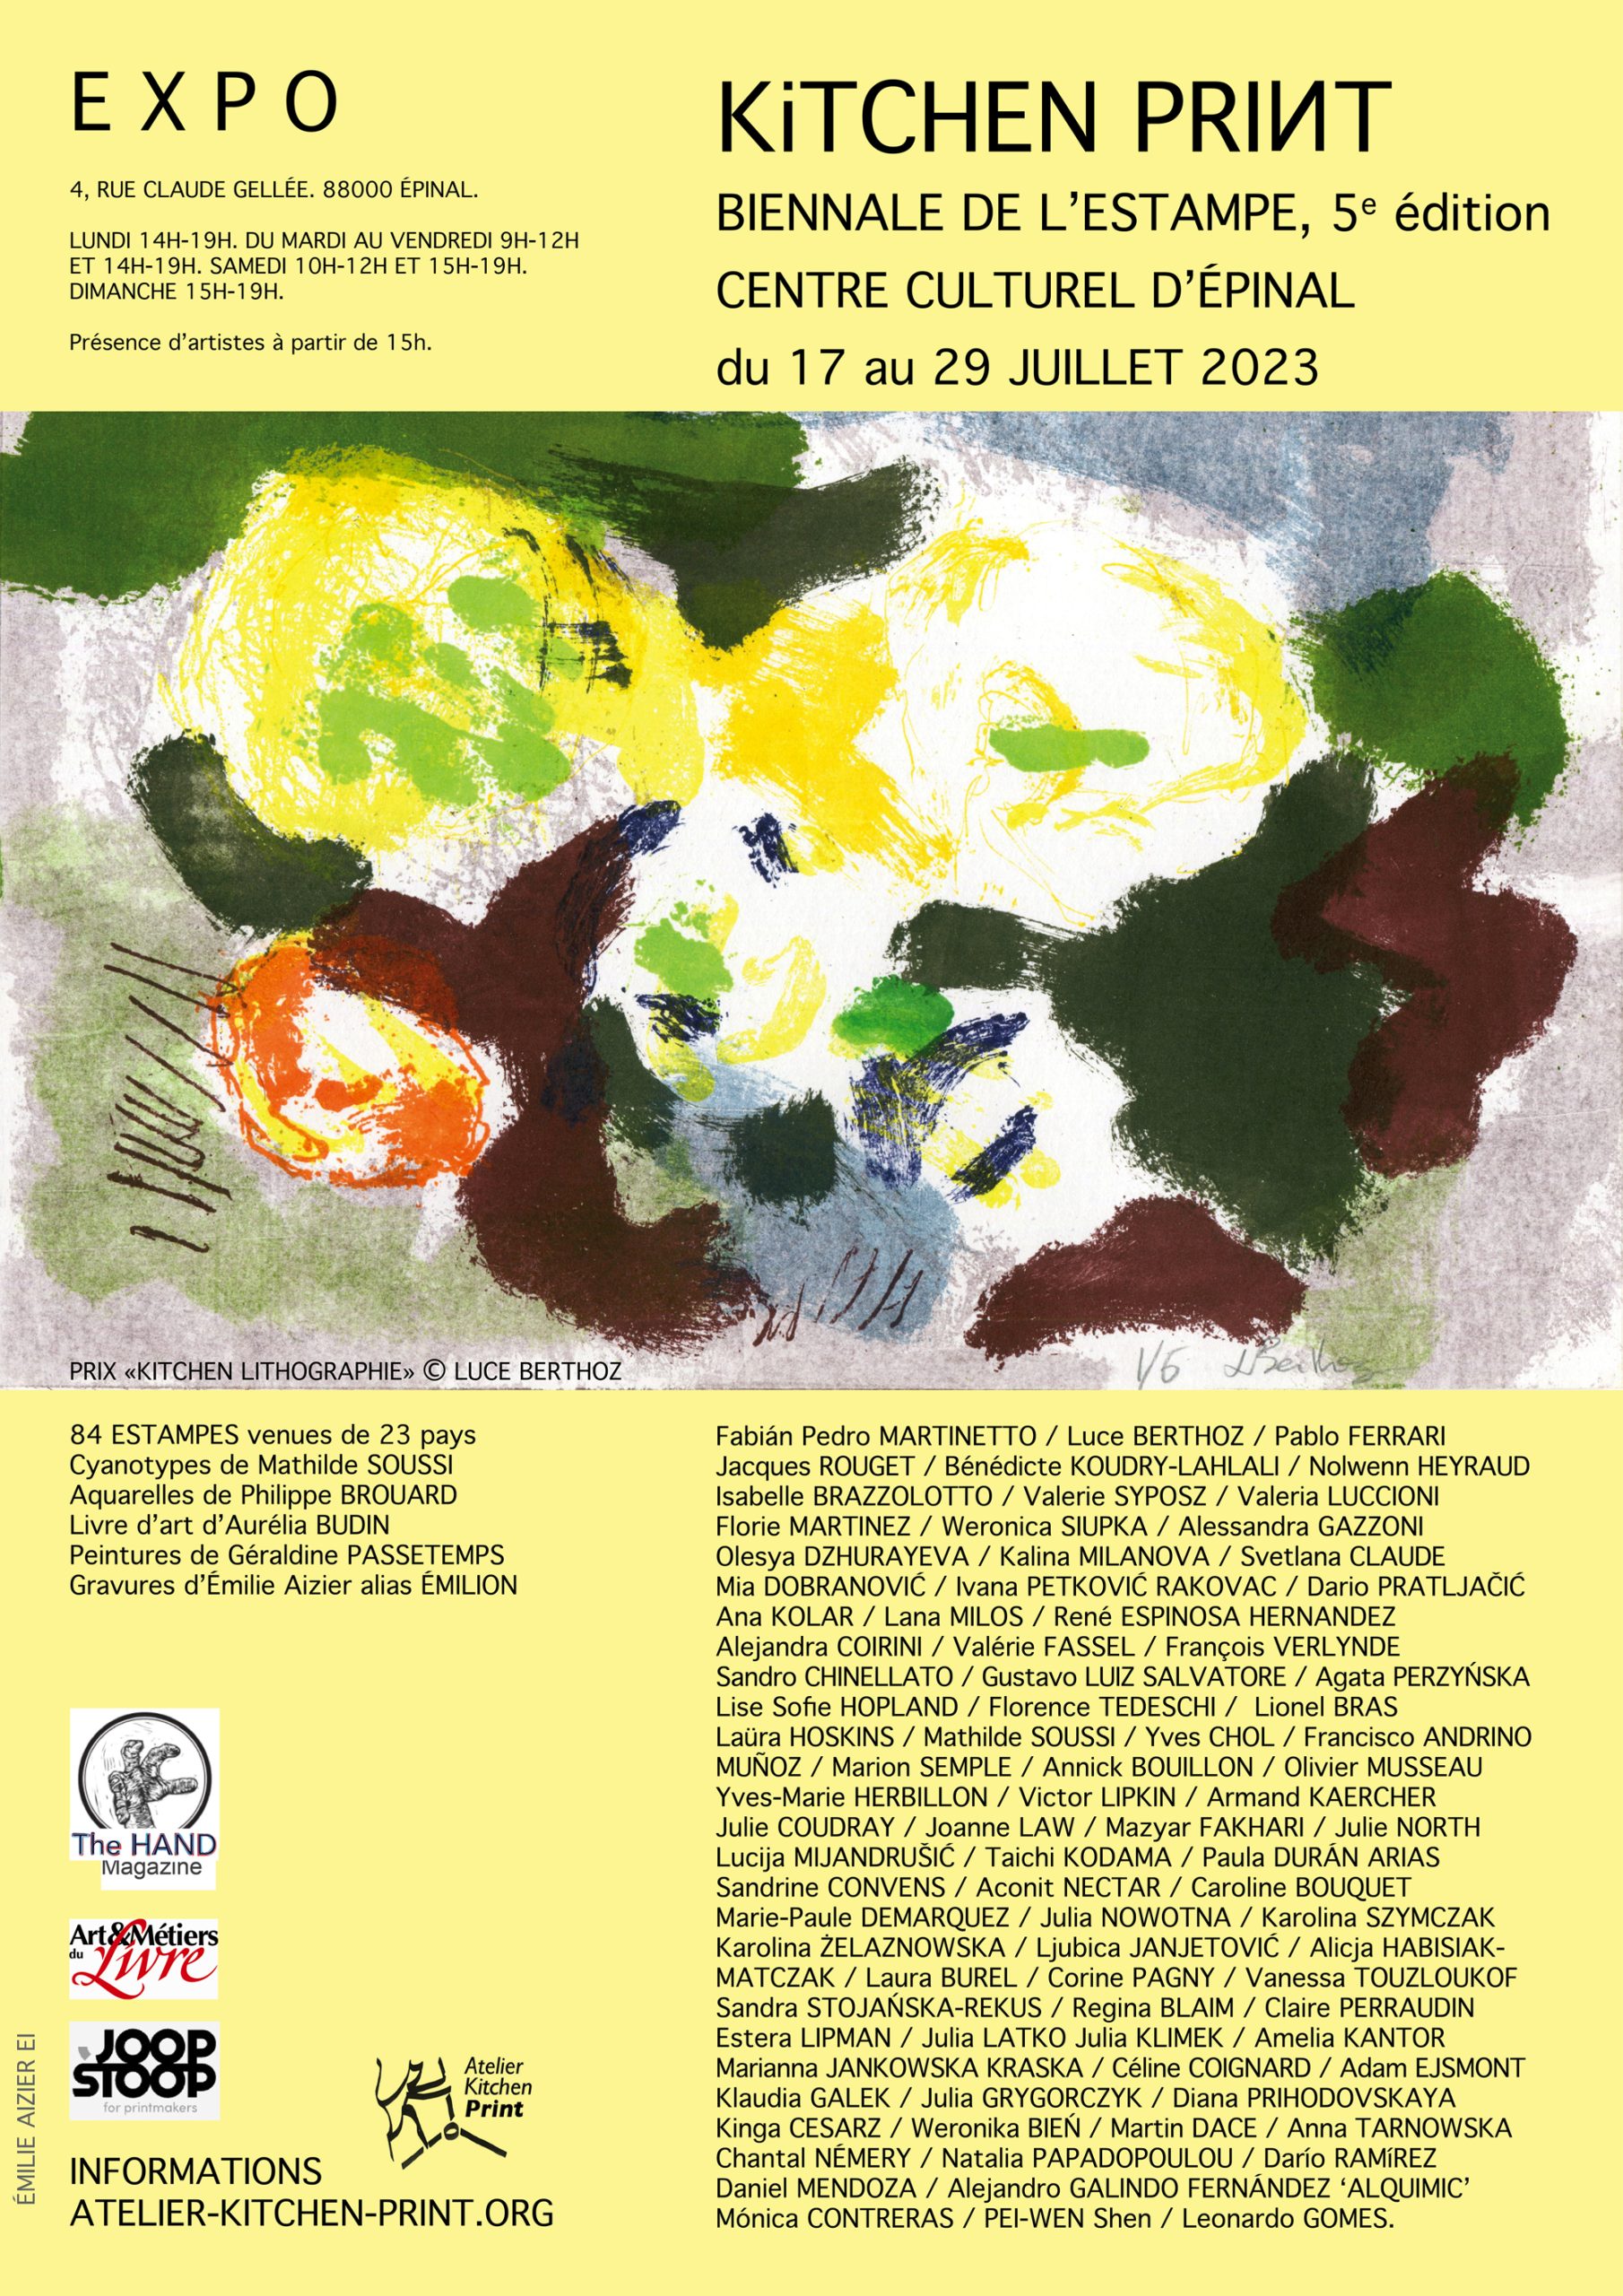 EXPOSITION “Kitchen Print Biennale 2021-2022” du 17 au 29 juillet 2023 au Centre culturel d’Épinal